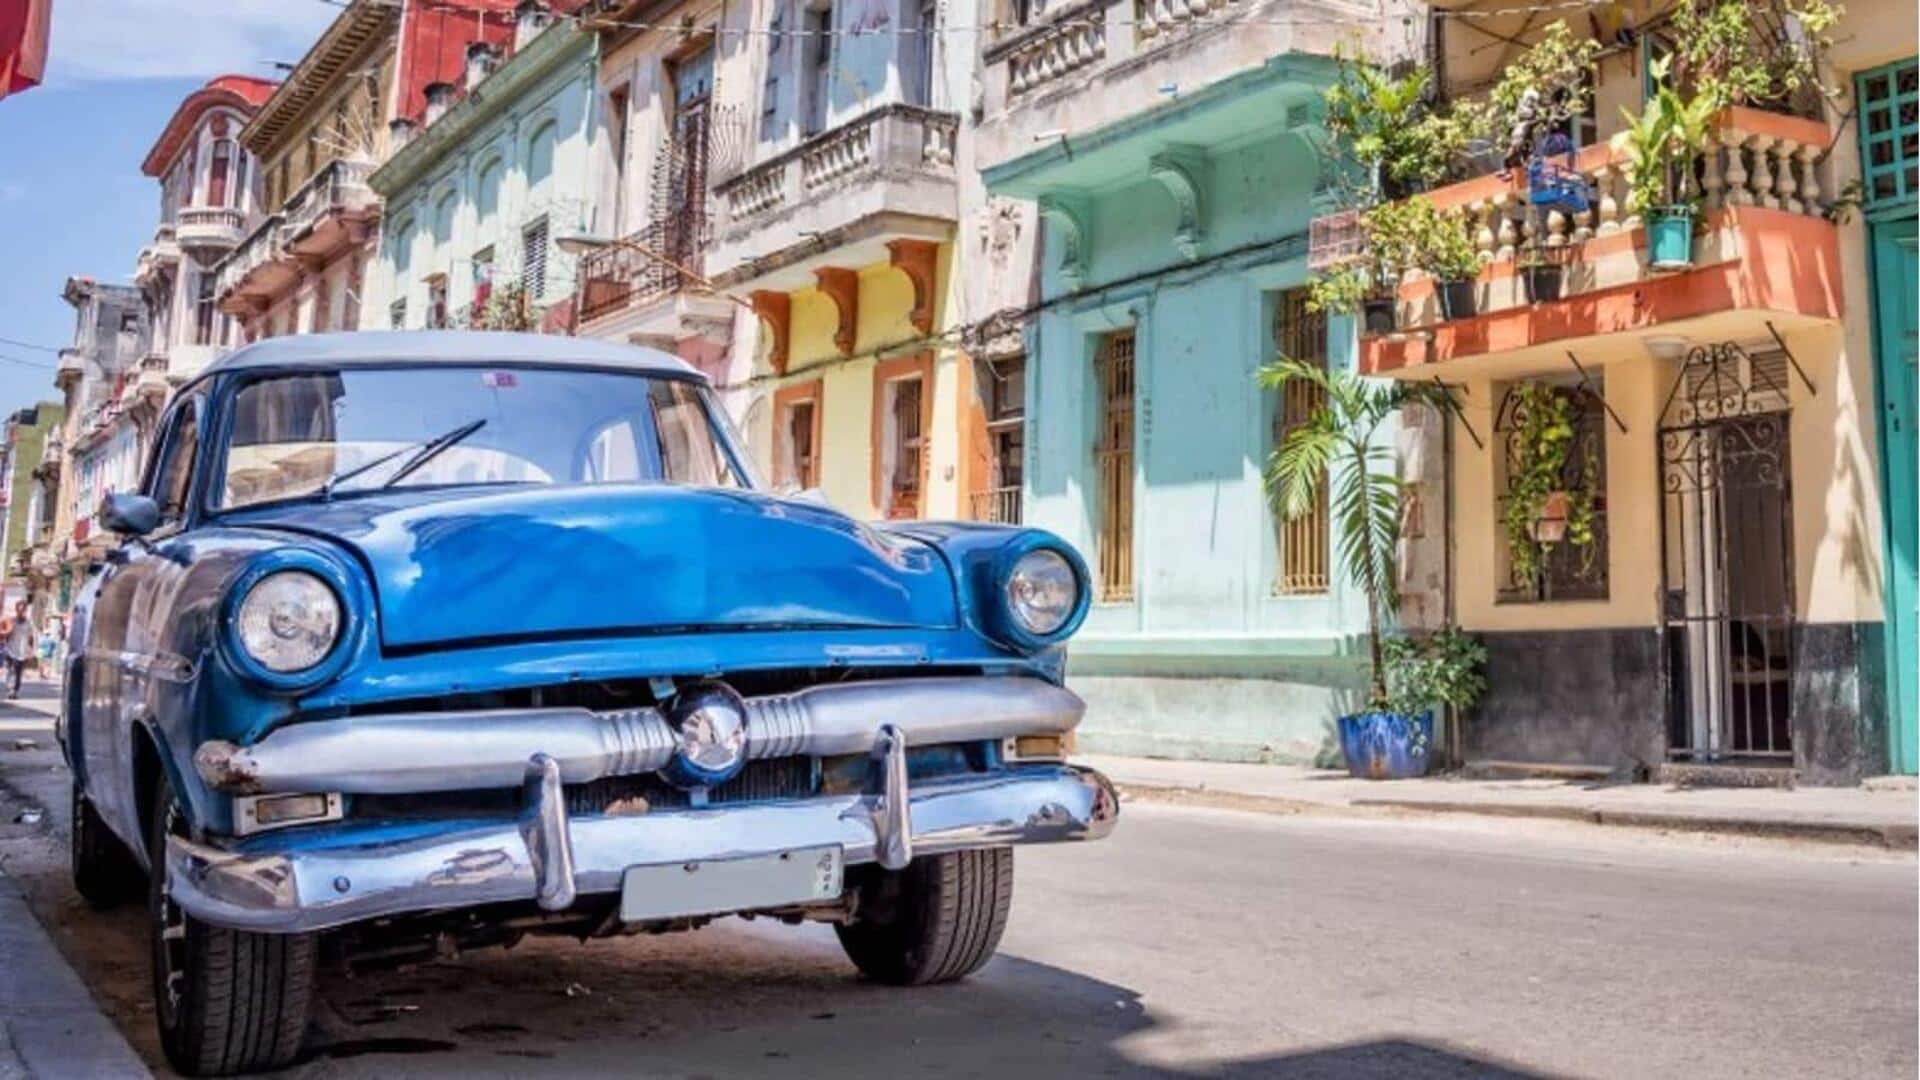 Perjalanan waktu ke Havana, Kuba dengan destinasi antik-nya